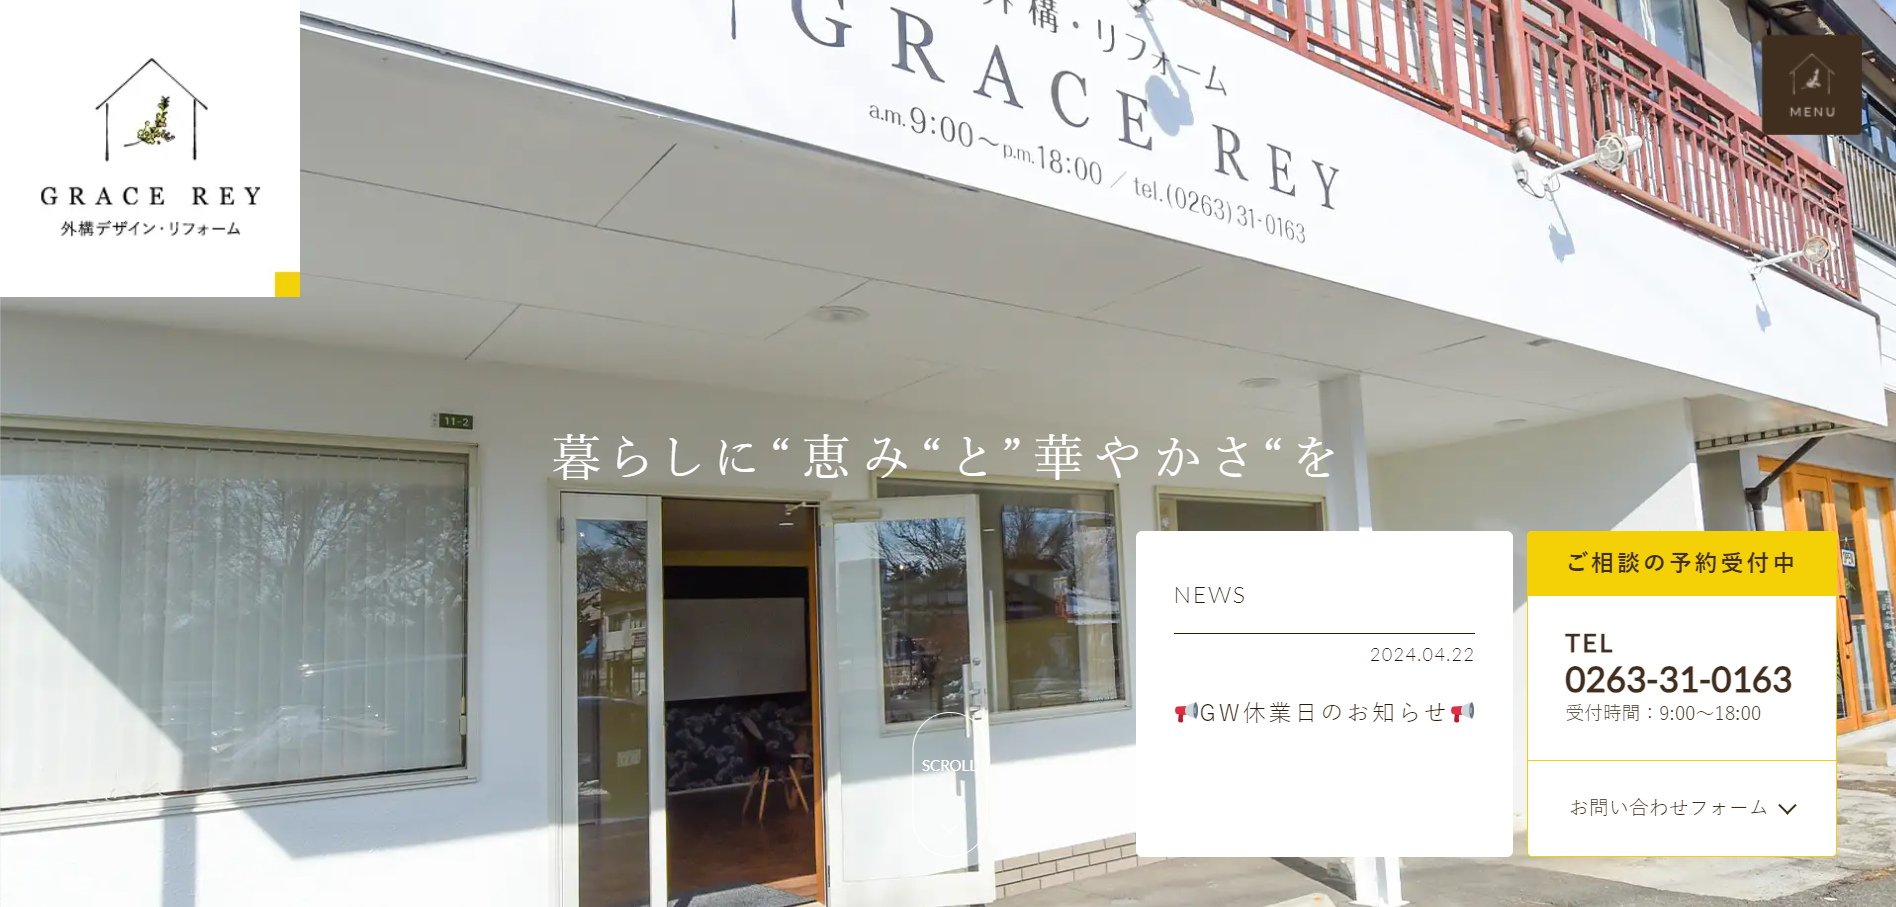 松本市で評判のおすすめ外構業者ランキング 第6位 GRACE REY（グレイスレイ）